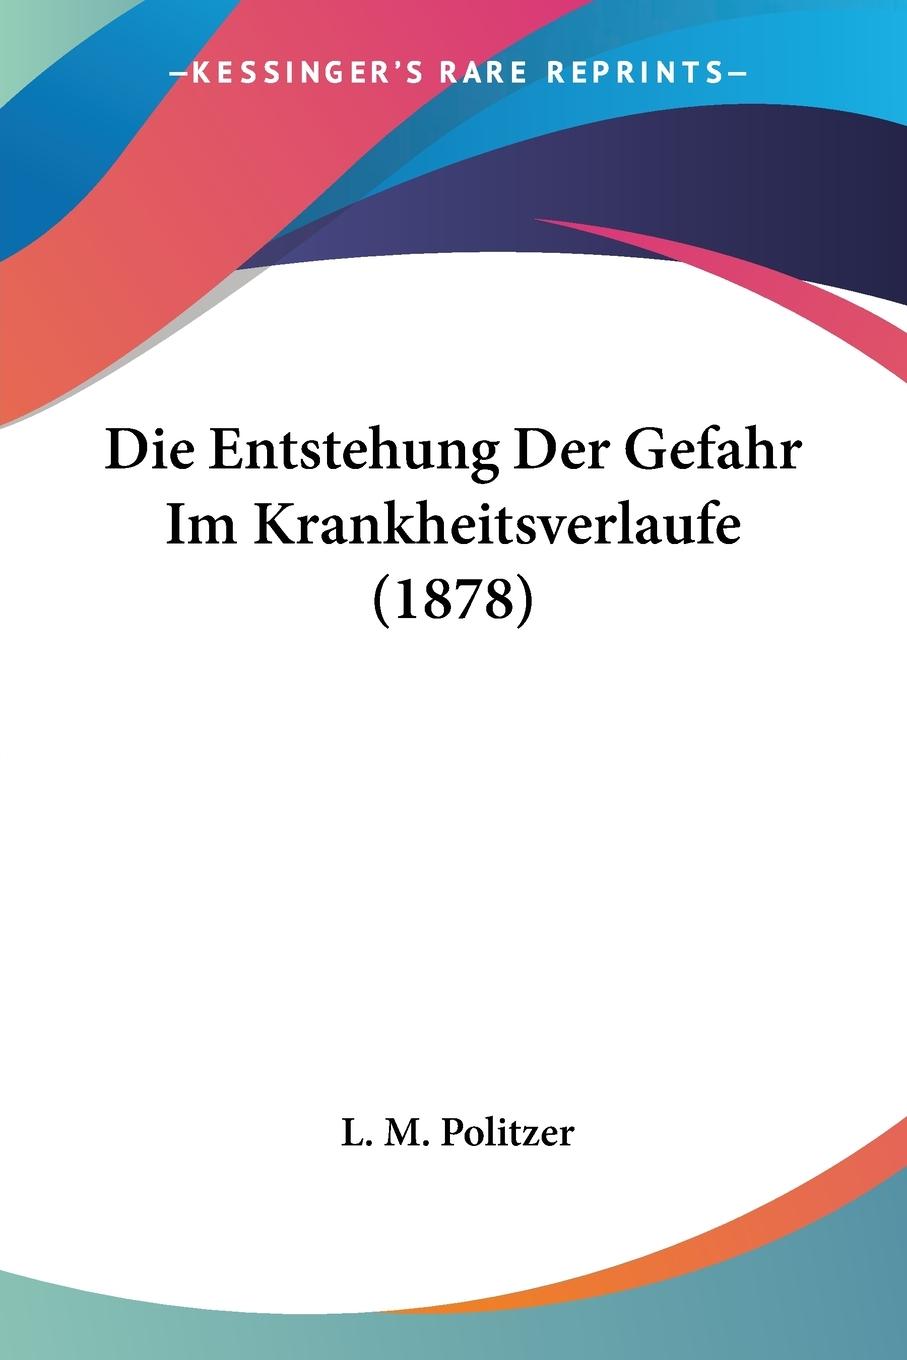 Die Entstehung Der Gefahr Im Krankheitsverlaufe (1878) - Politzer, L. M.